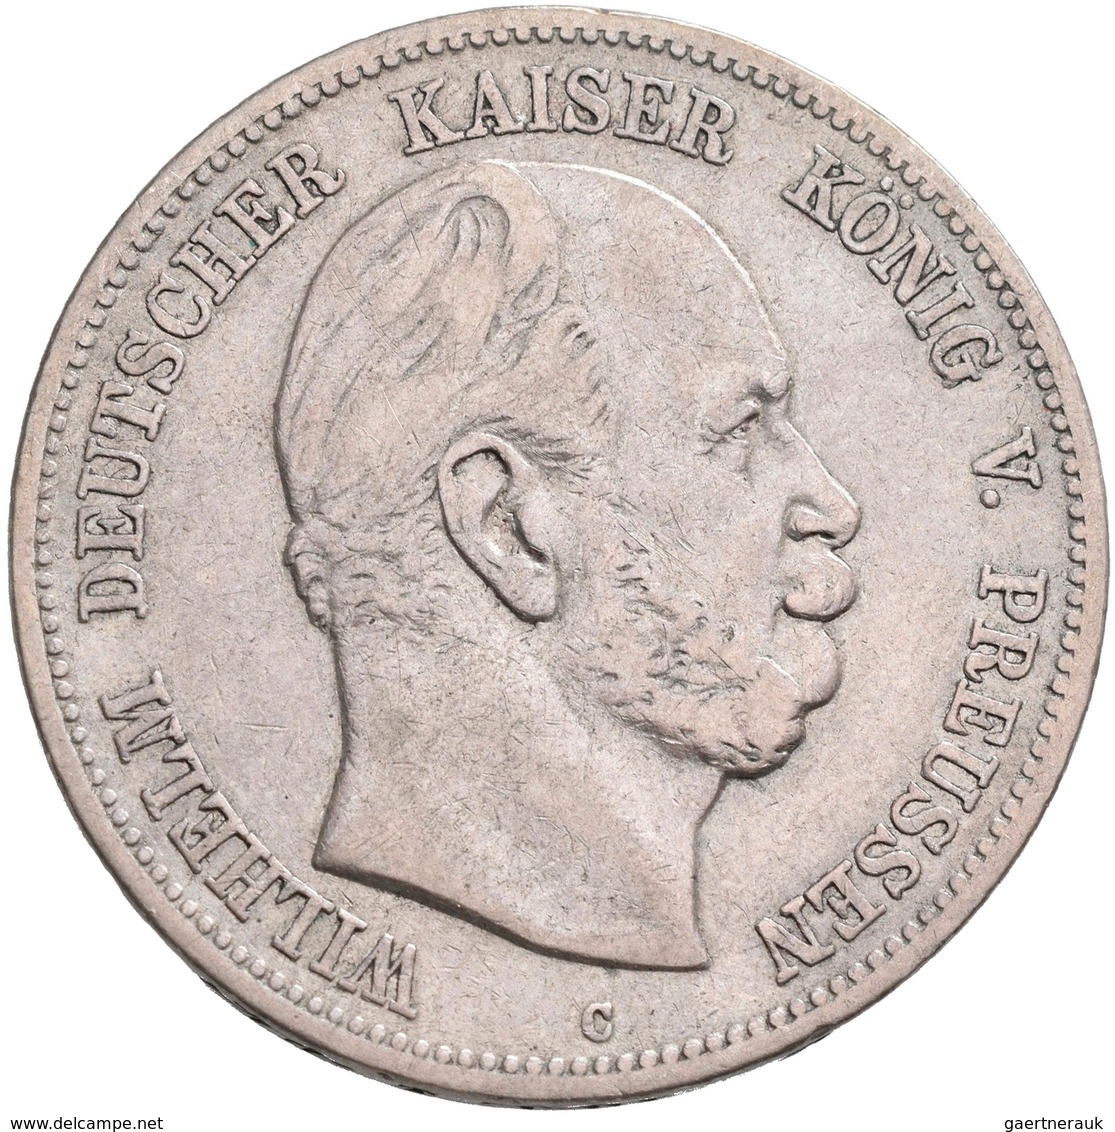 Deutsches Kaiserreich: Lot 4 Stück; Bayern 5 Mark 1904, Preußen 5 Mark 1876, 5 Mark 1907, 5 Mark 191